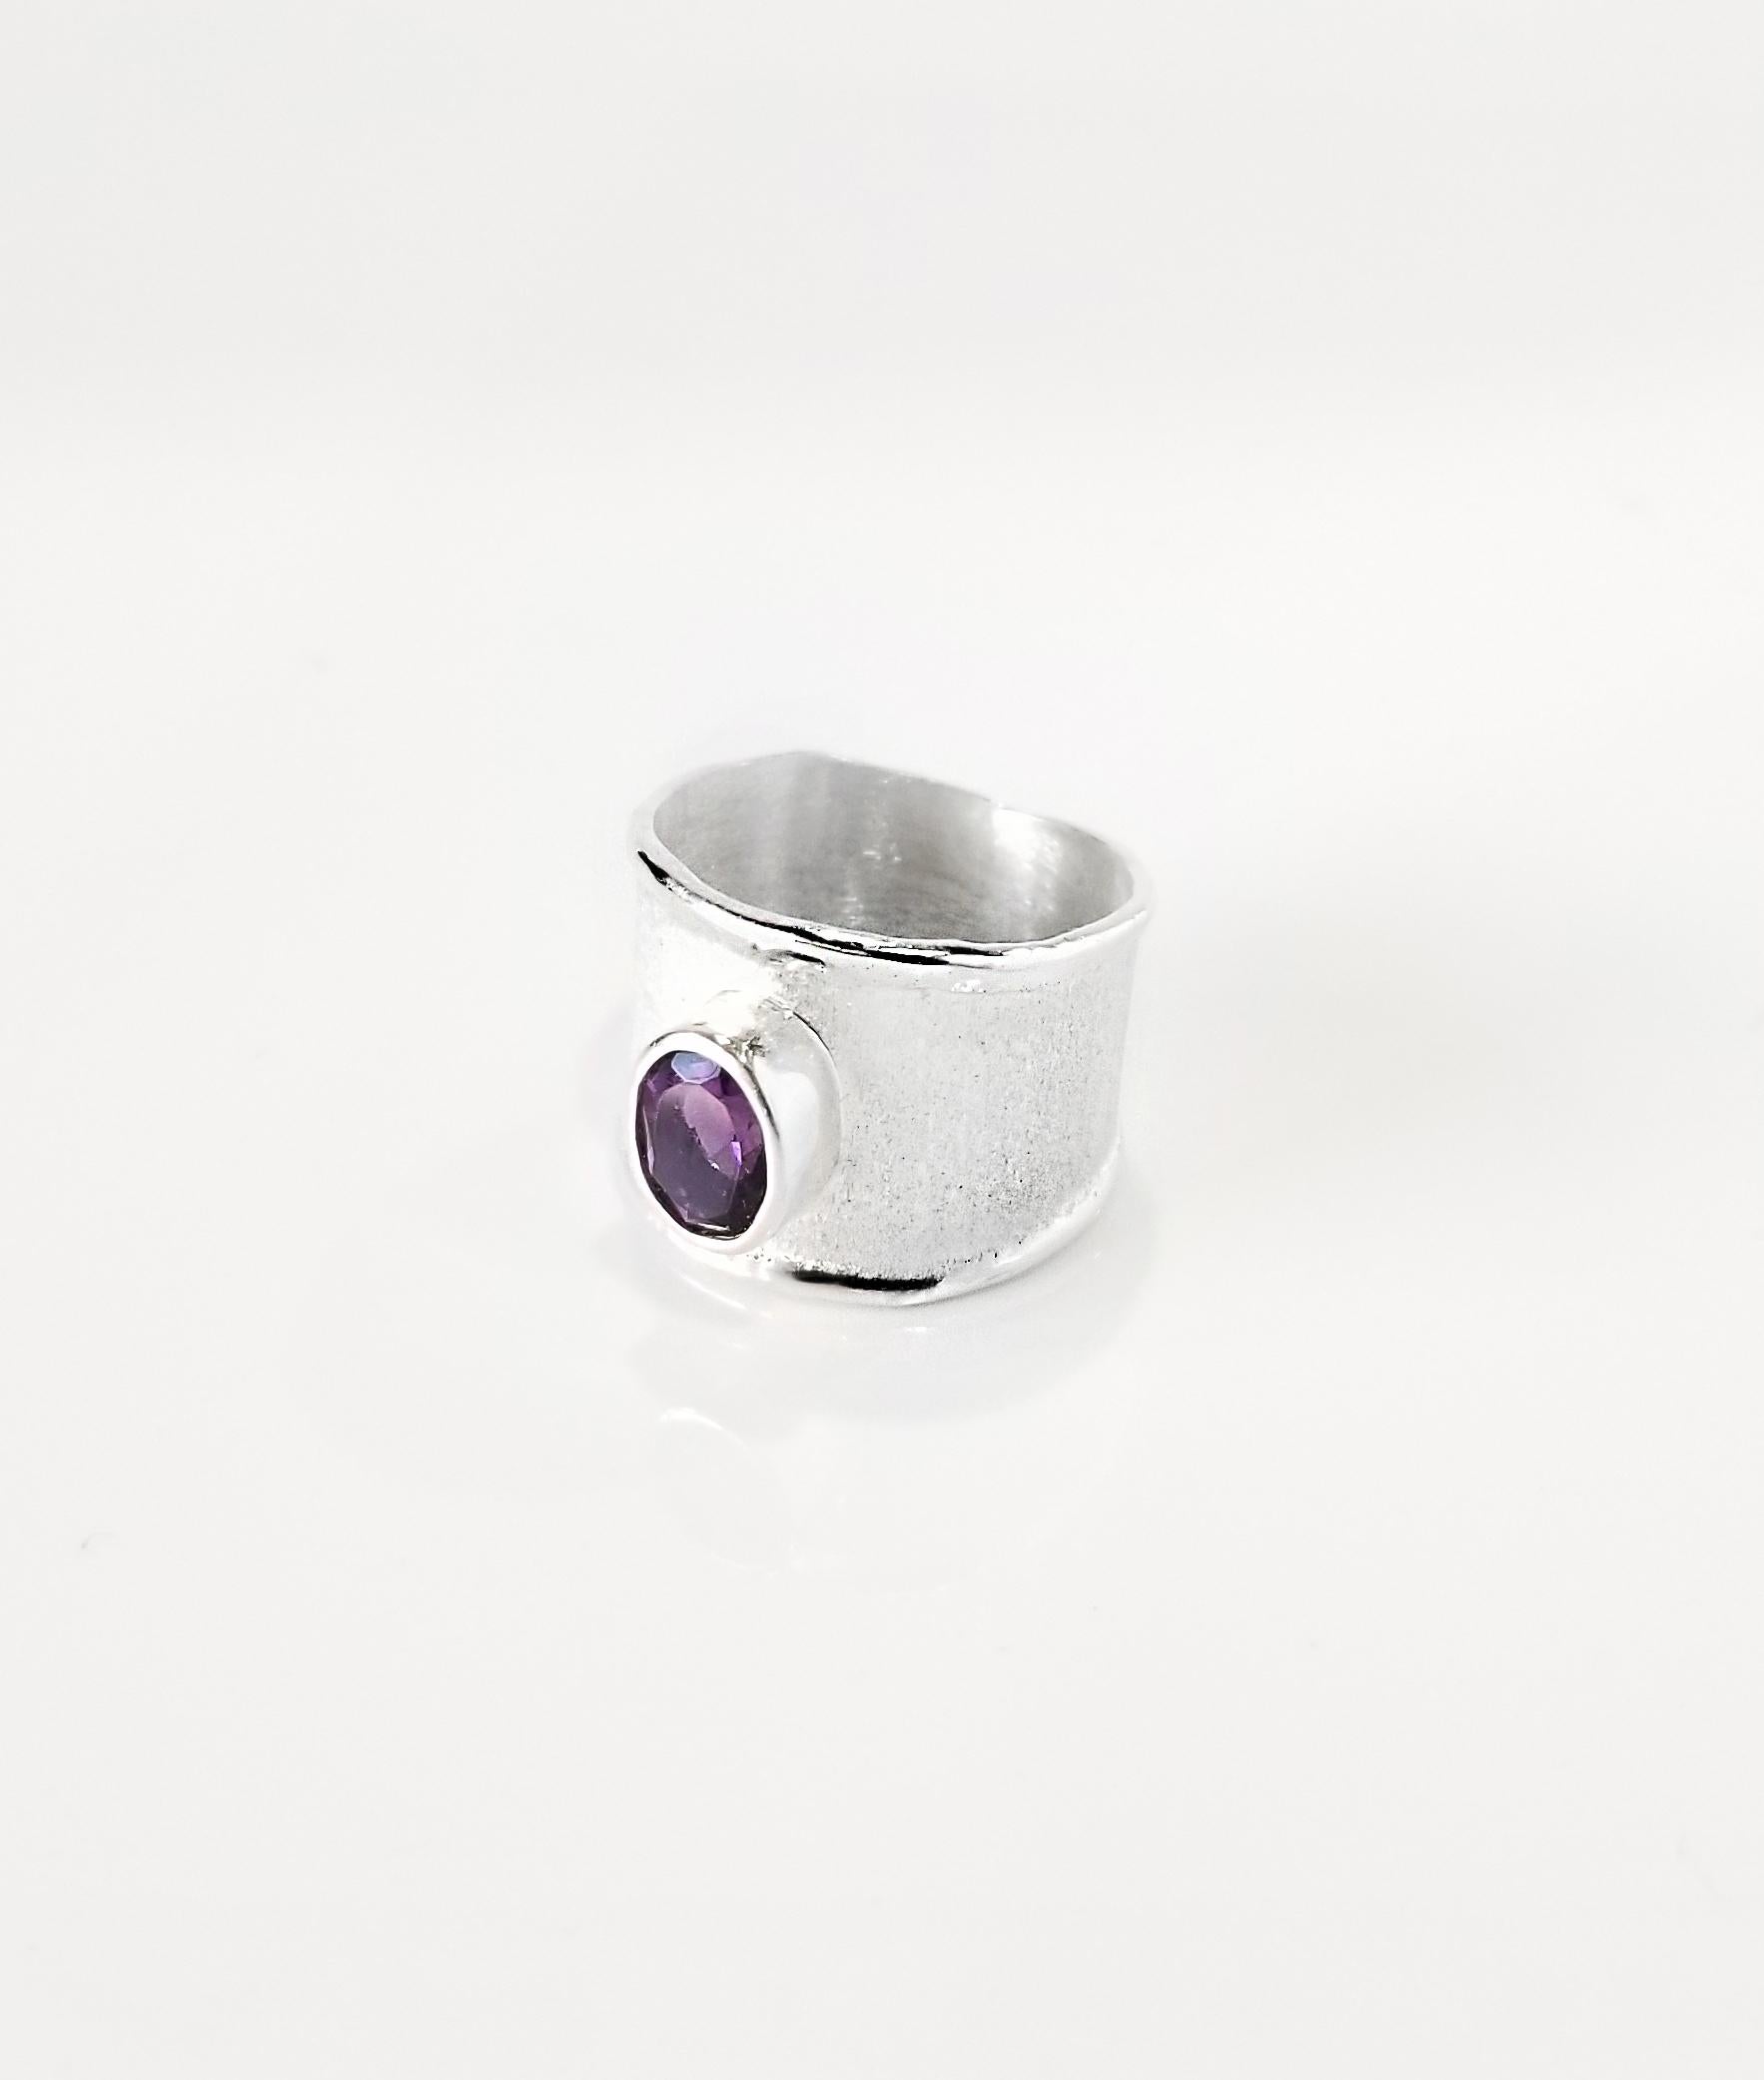 Yianni Creations Ammos Collection 100% handgefertigter Ring aus Feinsilber mit 1,25 Karat Amethyst, ergänzt durch einzigartige Handwerkstechniken - gebürstete Textur und von der Natur inspirierte flüssige Kanten. Der Kern dieses schönen Rings